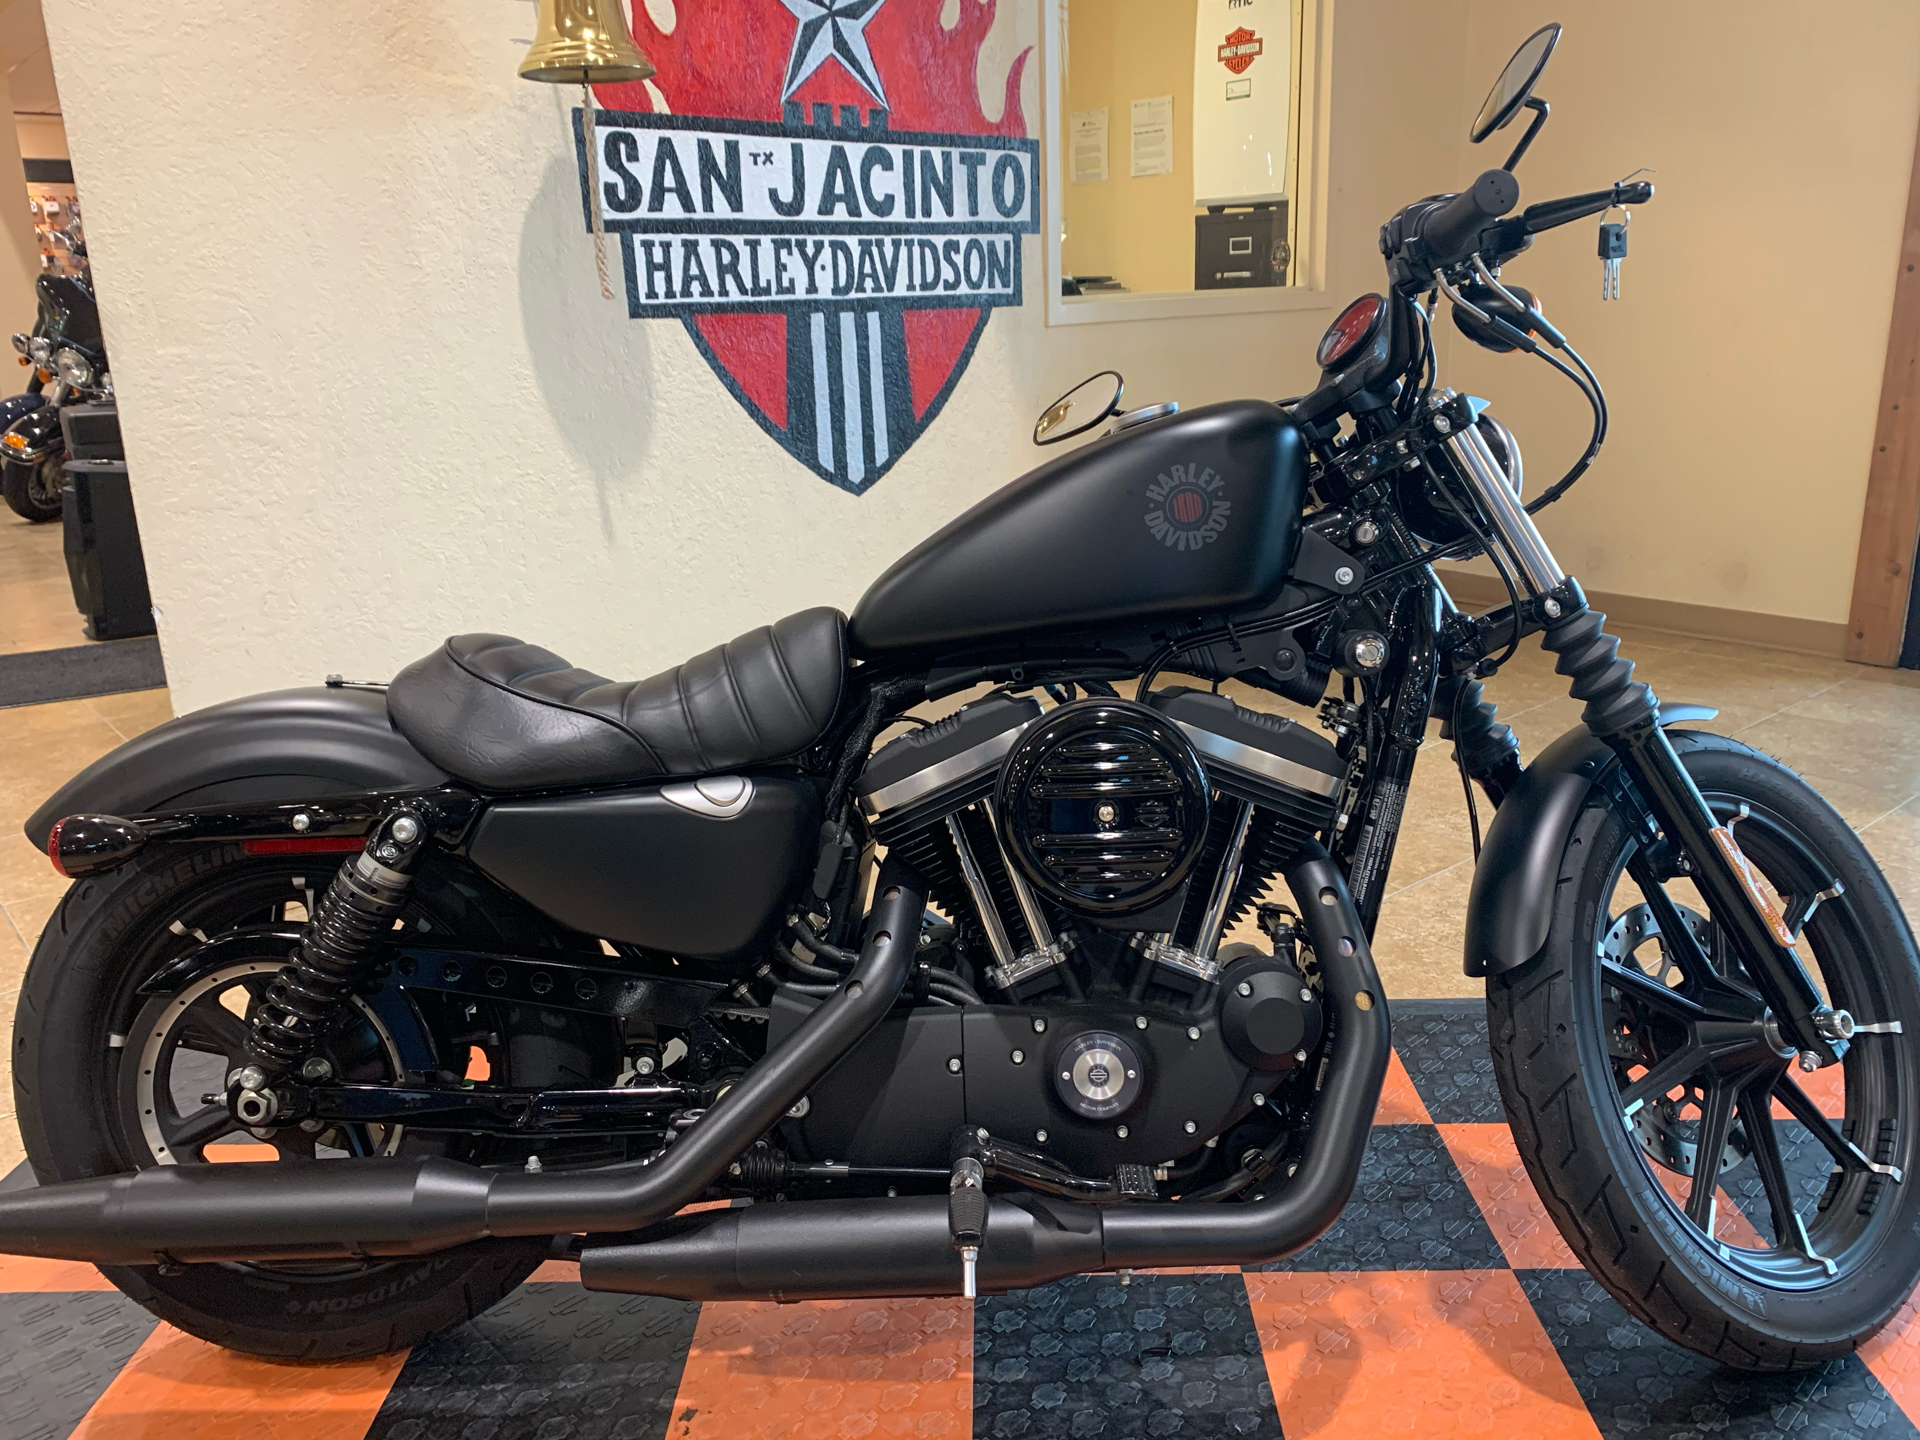 Used 2020 Harley Davidson Iron 883 Motorcycles In Pasadena Tx 436891 Black Denim